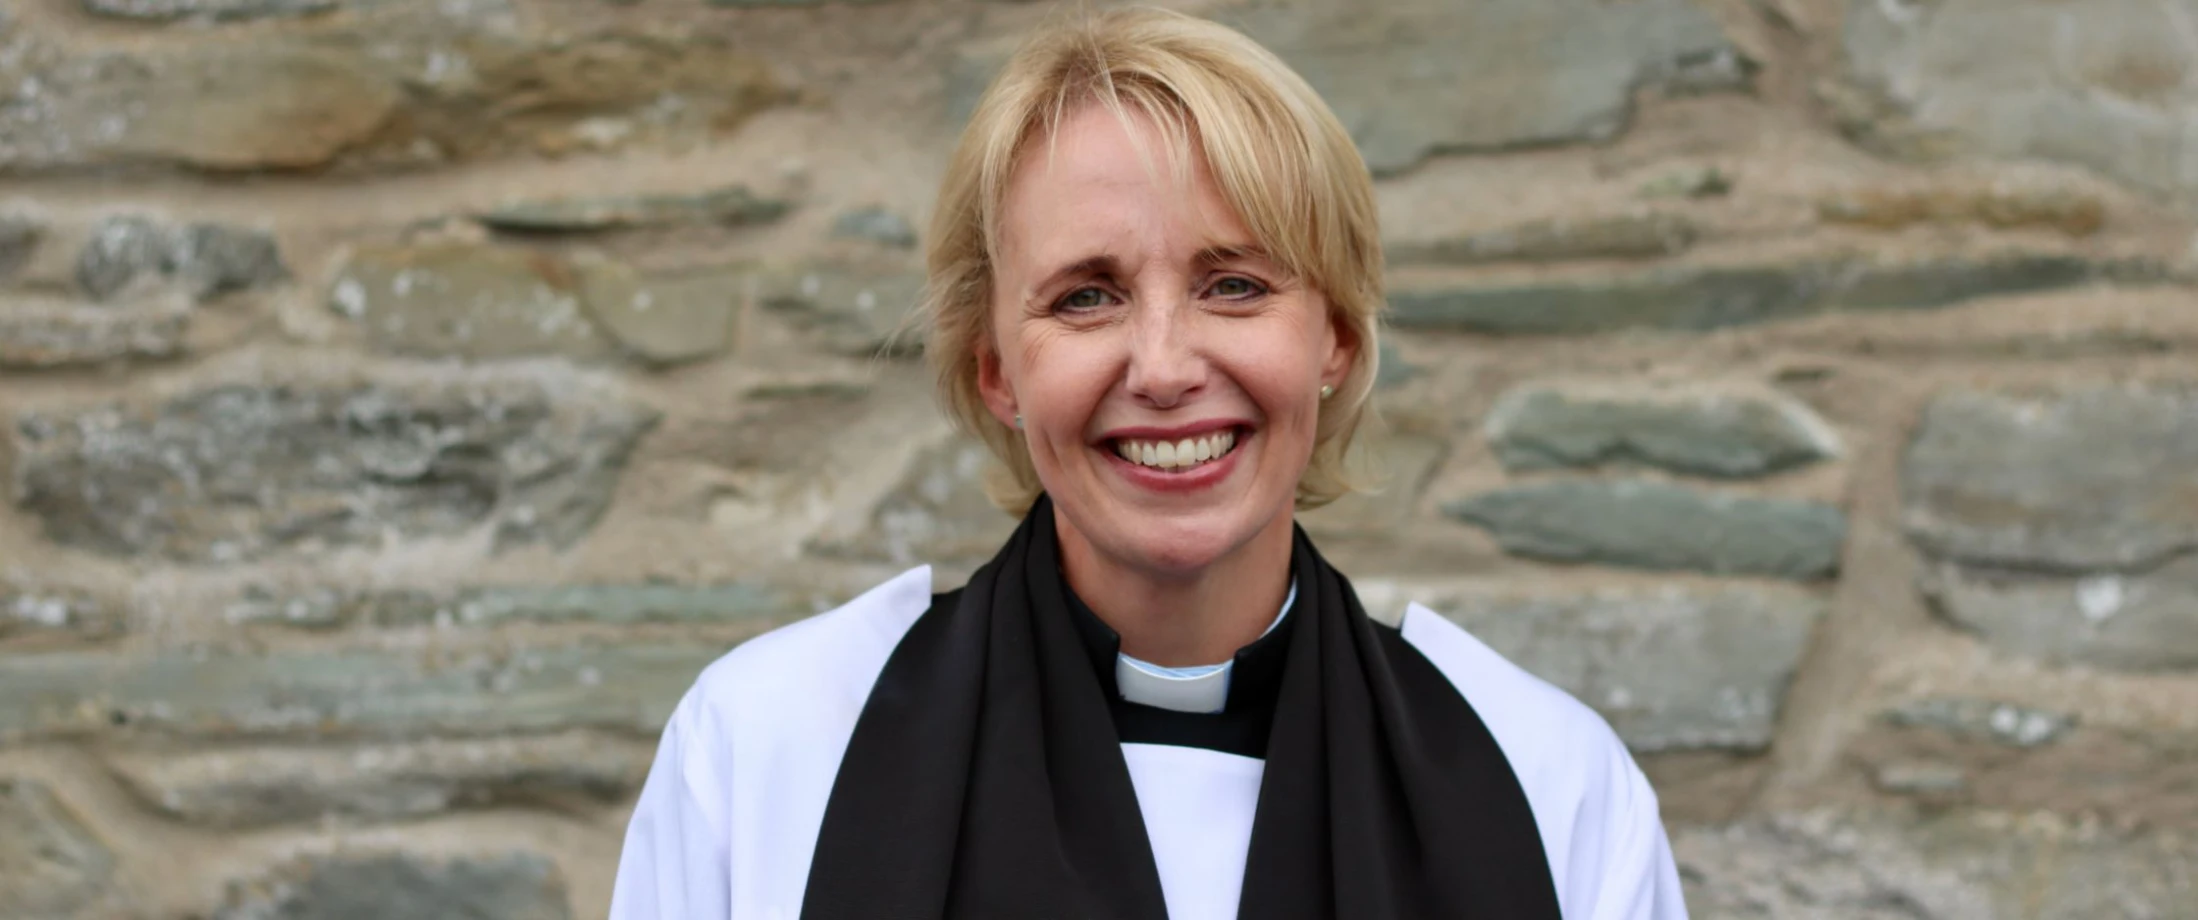 Revd Elaine Pentland is ordained presbyter